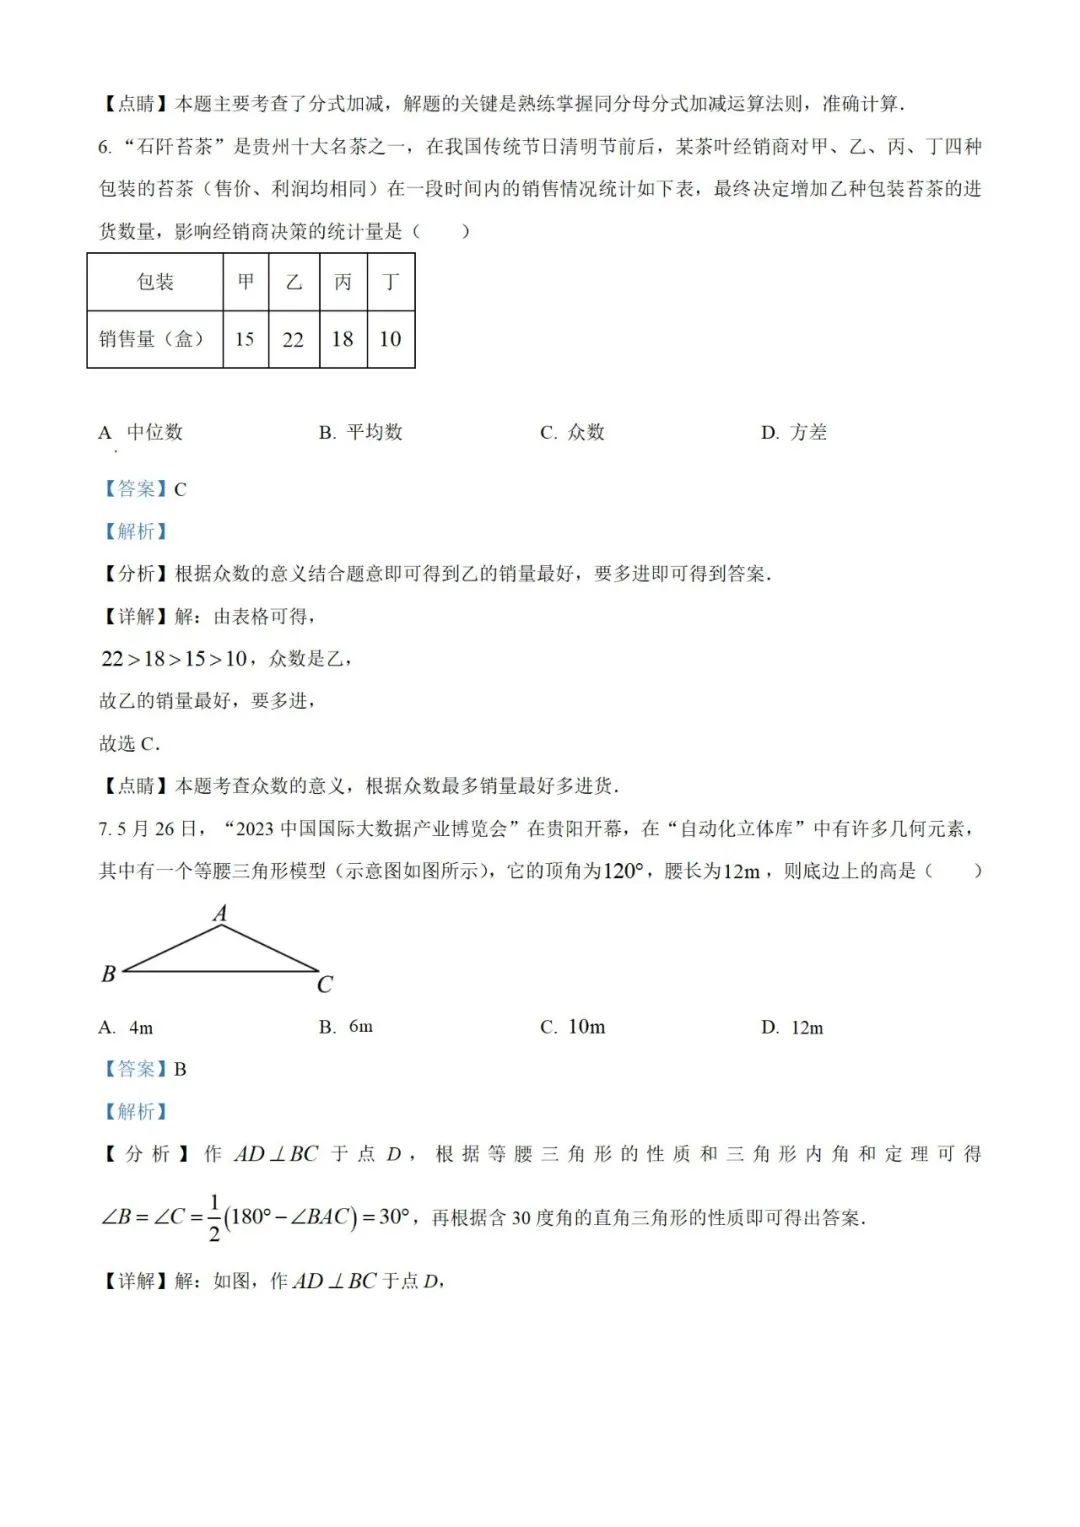 【中考真题】2023年贵州省中考数学真题 (带答案解析) 第11张